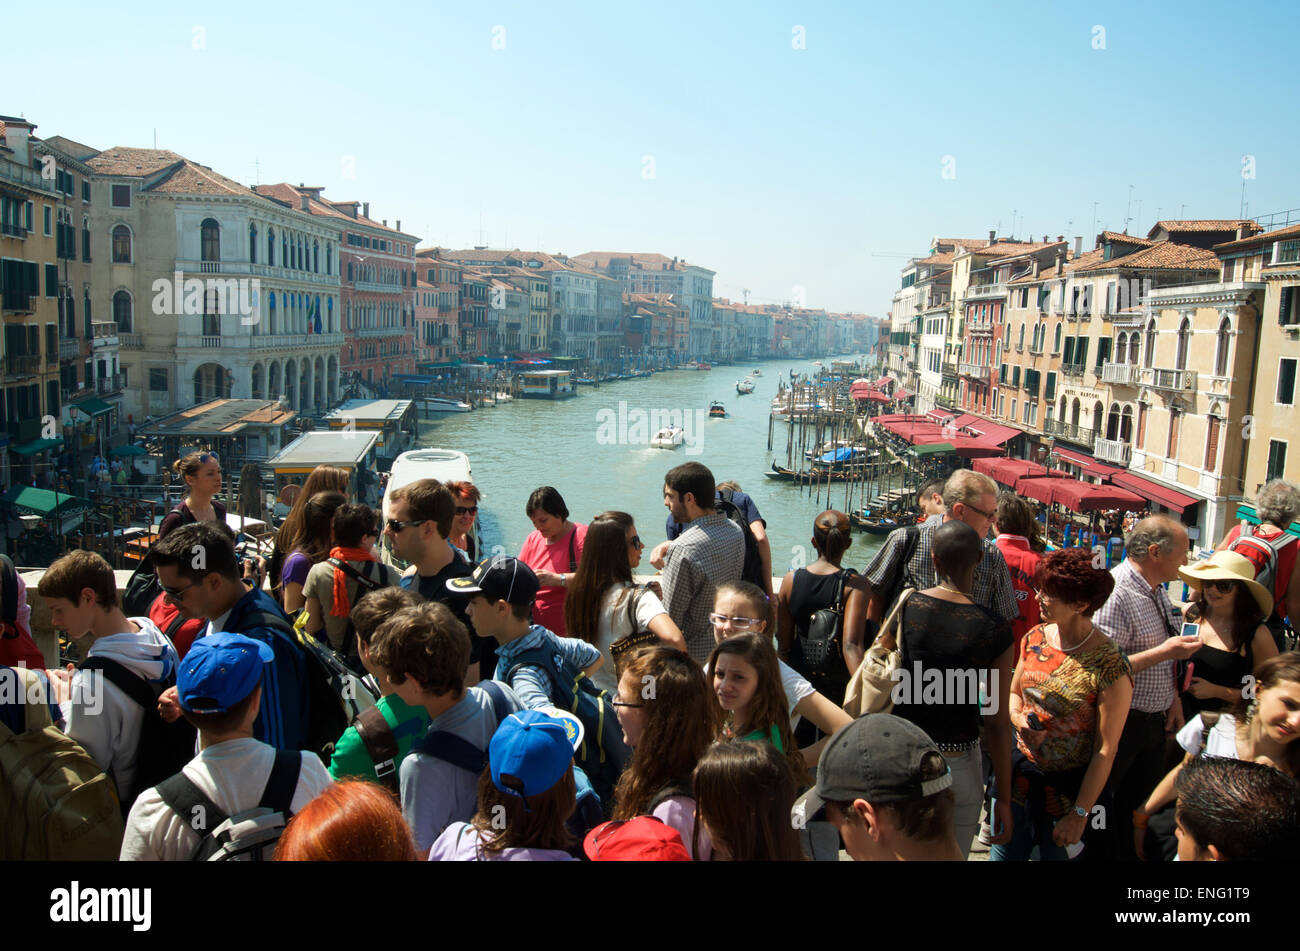 Venise, Italie - 24 avril 2013 : des foules de touristes passent le long du pont du Rialto à l'encontre d'une vue sur le Grand Canal. Banque D'Images